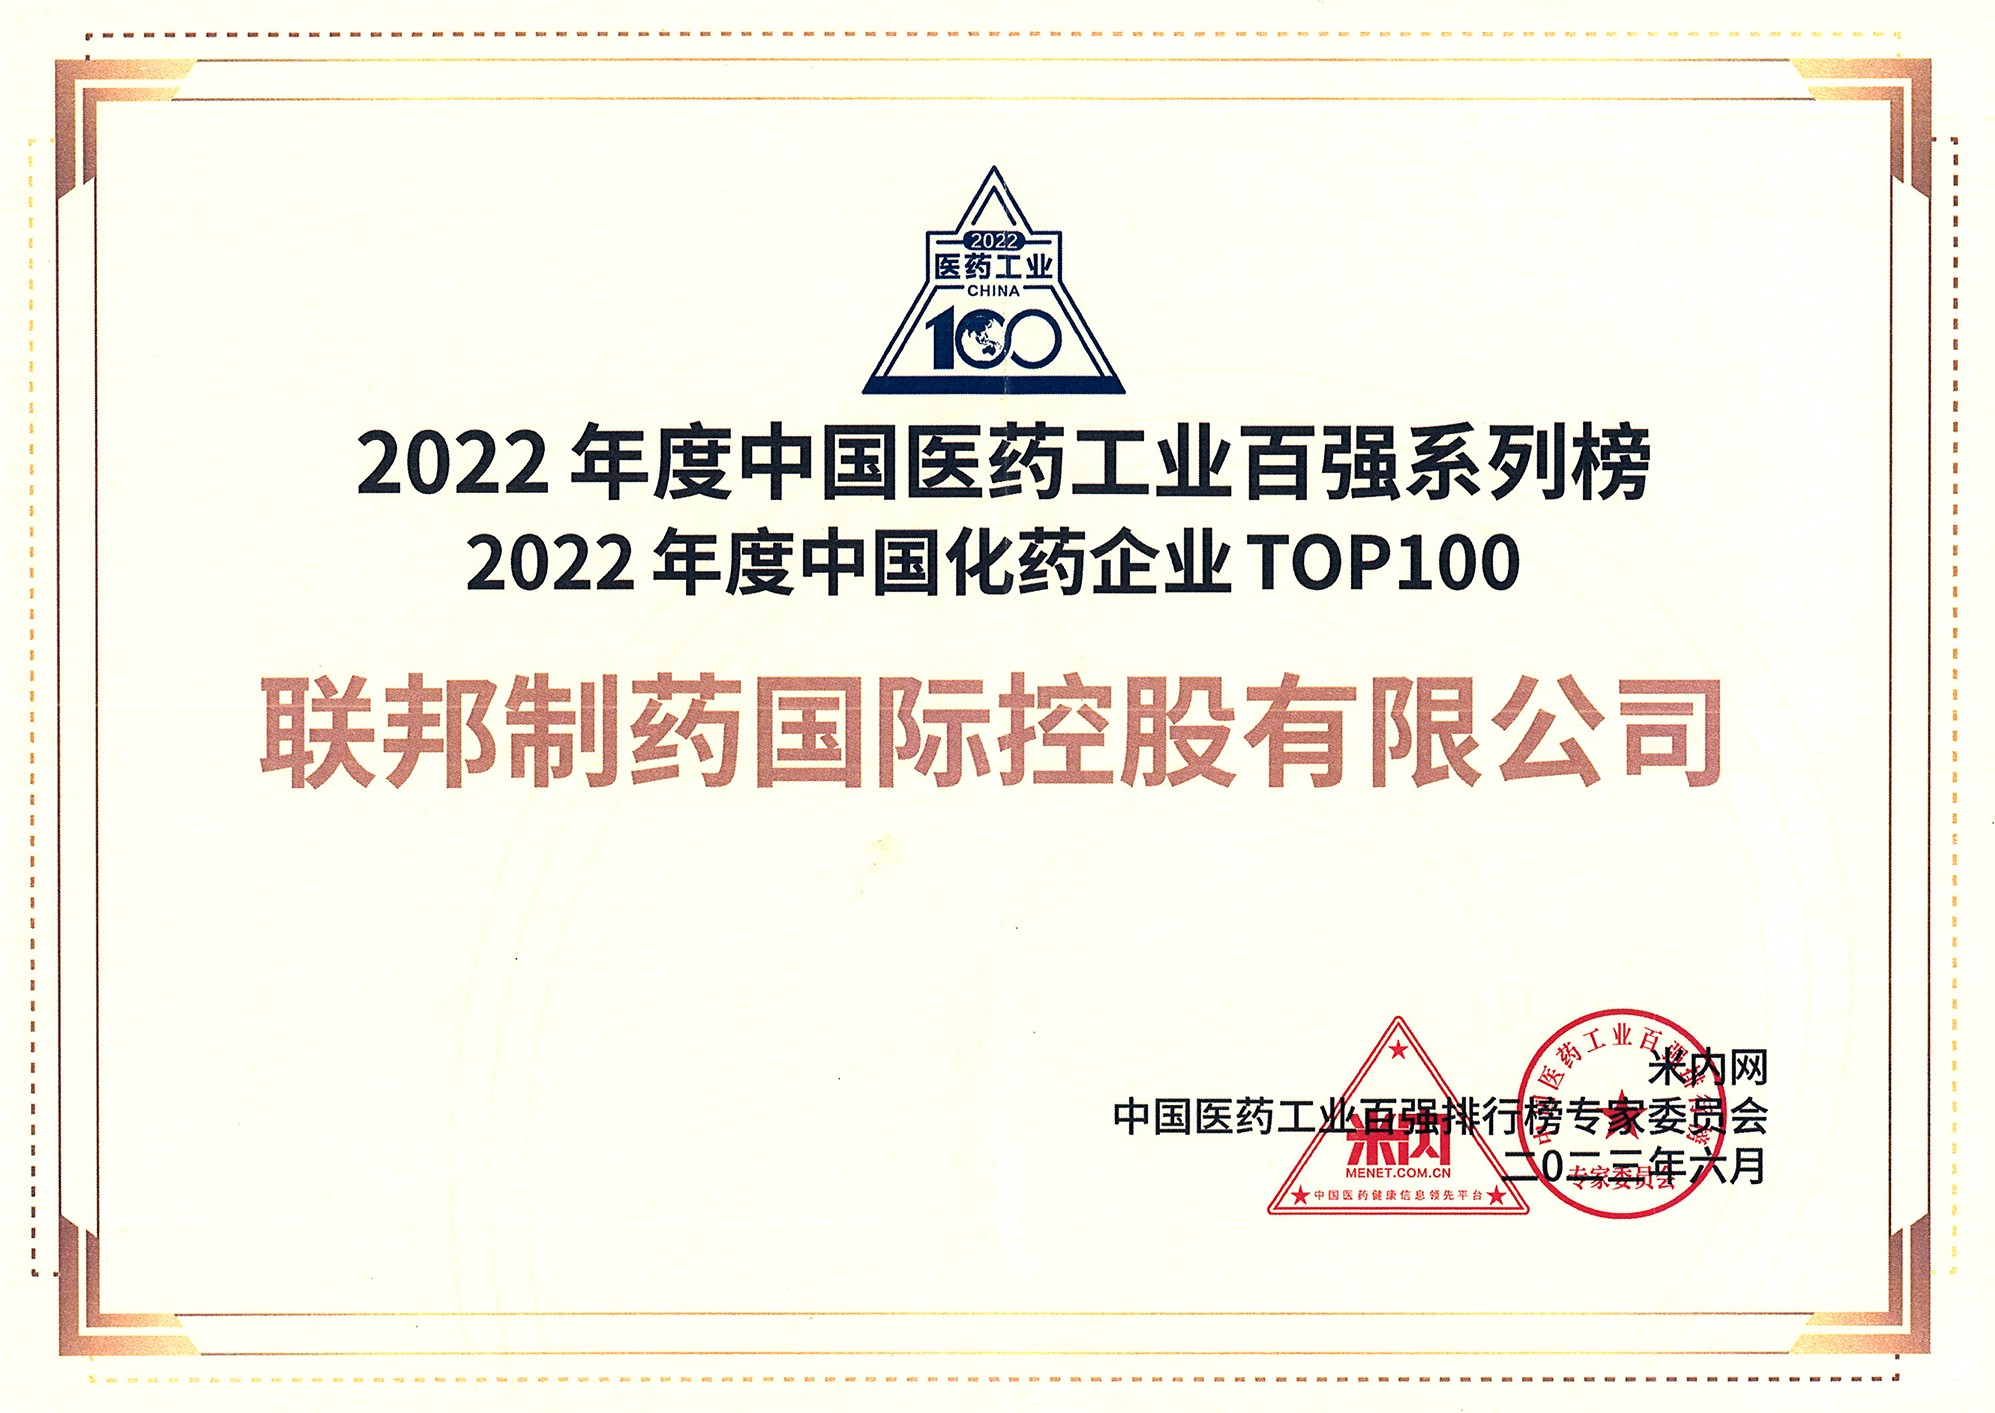 2022年度中国化药企业TOP100 